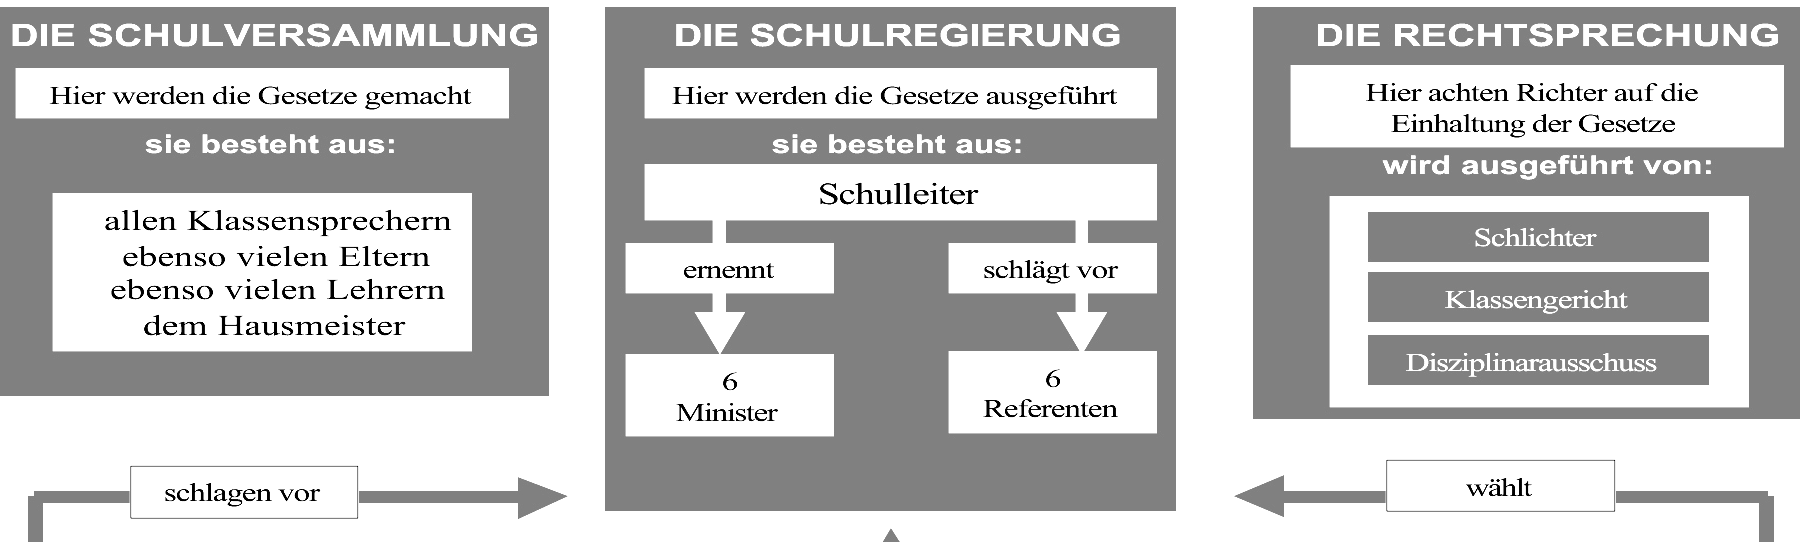 Das Modell der Polis: (Wiedergegeben nach Bruner / Winkelhofer / Zinser 2001, S. 36 f.) Die Schulregierung, die Exekutive, führt die Gesetze aus.